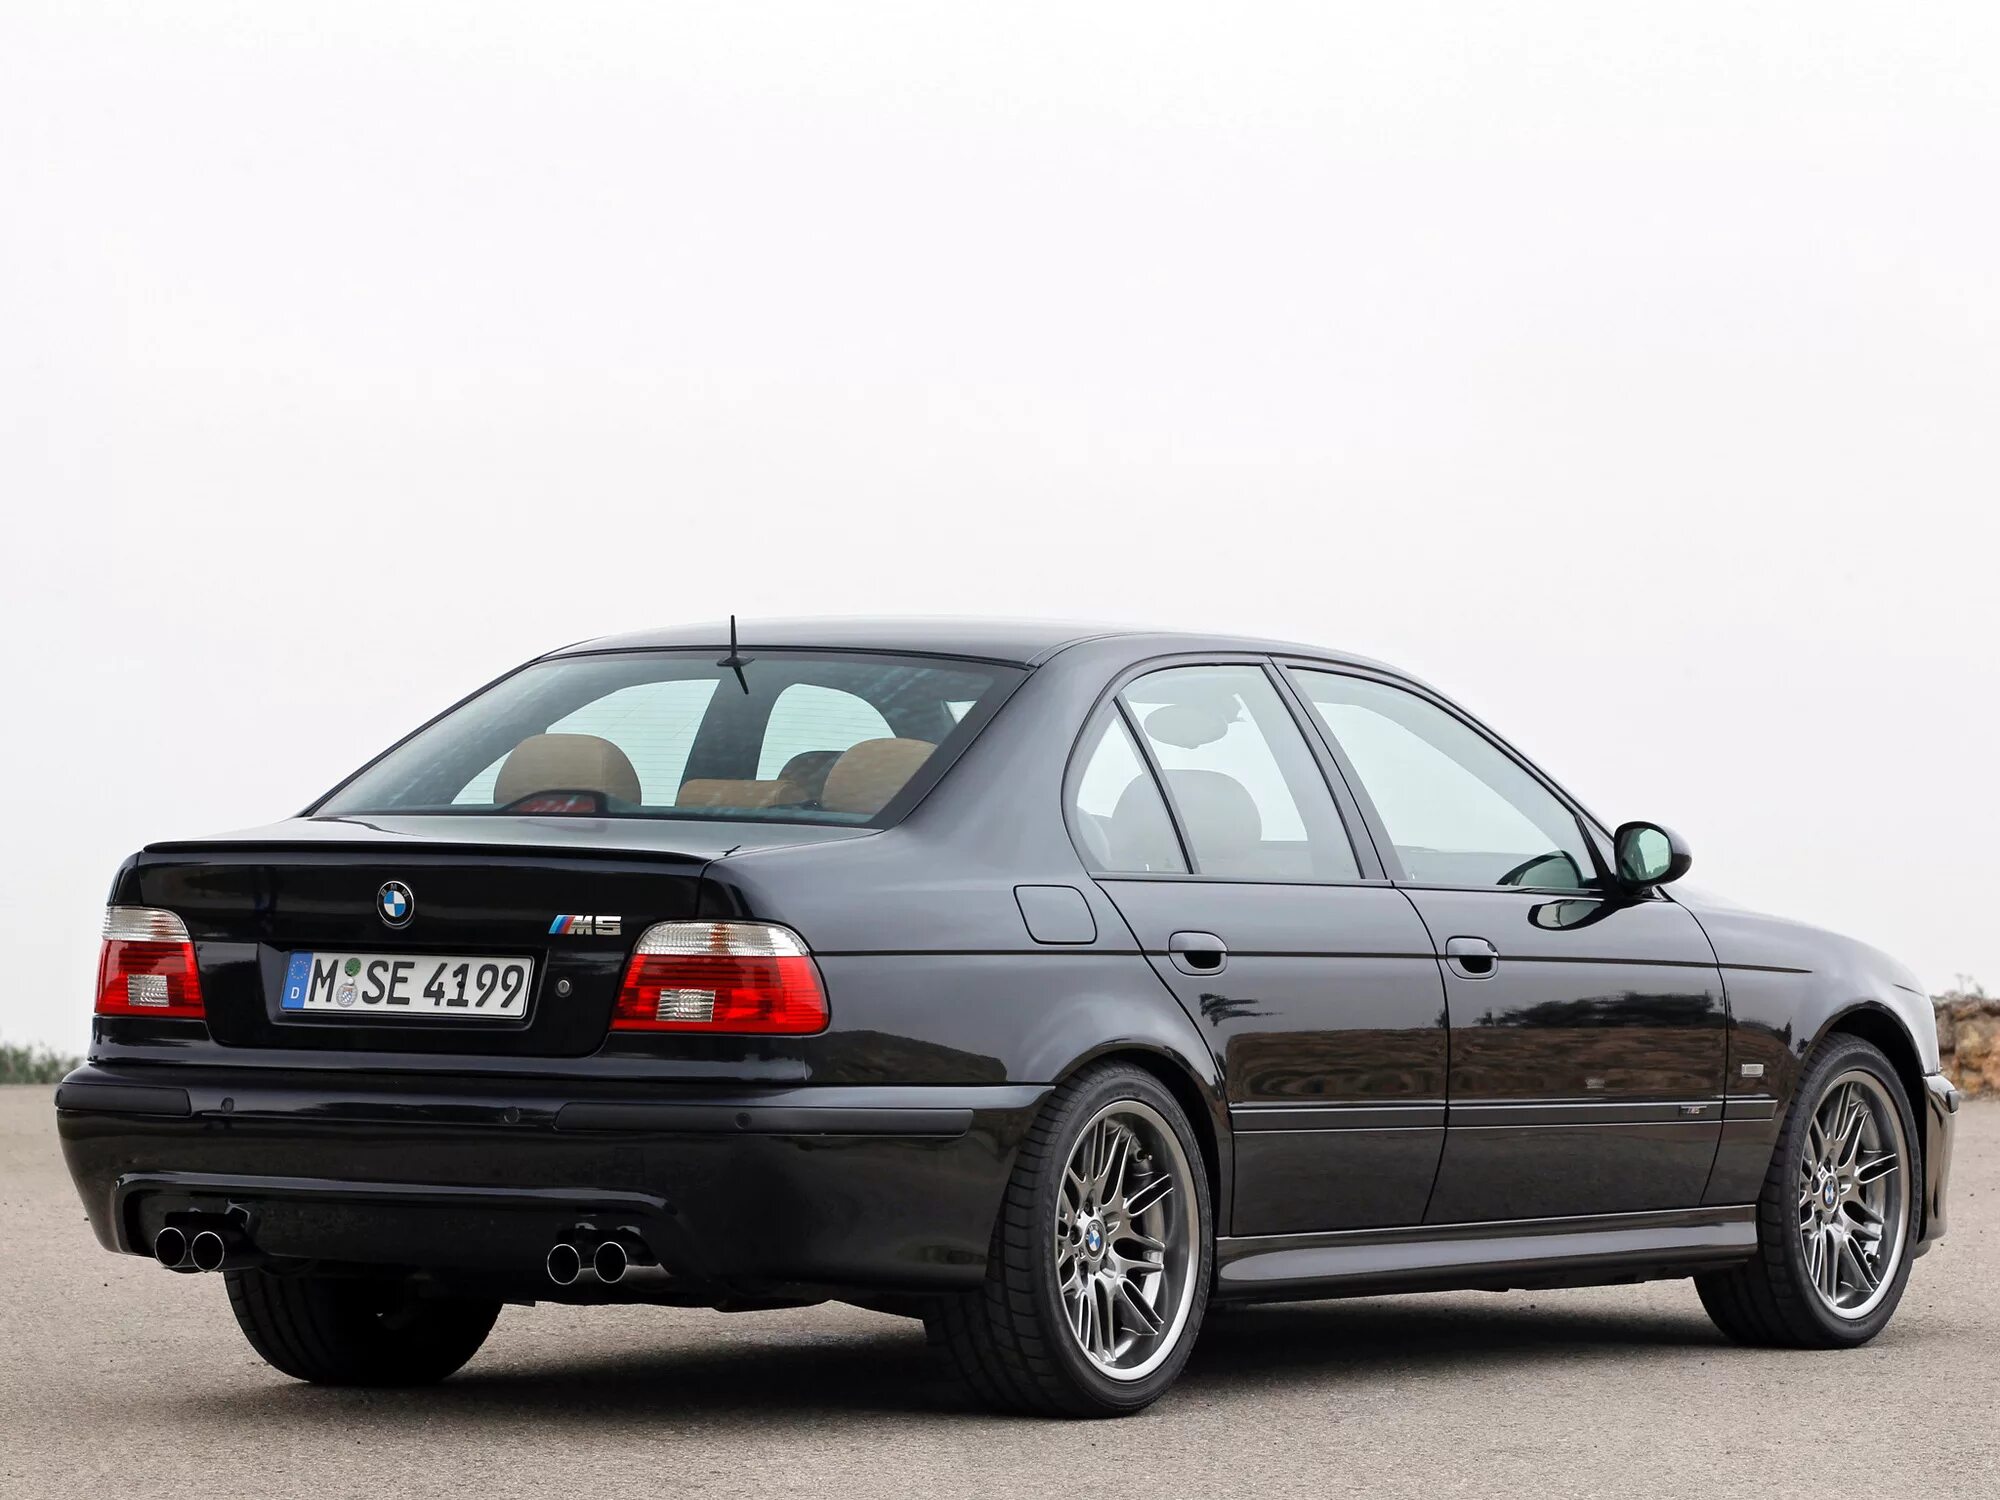 39 99 г. BMW m5 e39 1998. BMW m5 e39 2003. BMW 5 e39 m5. БМВ м5 е39 2003.